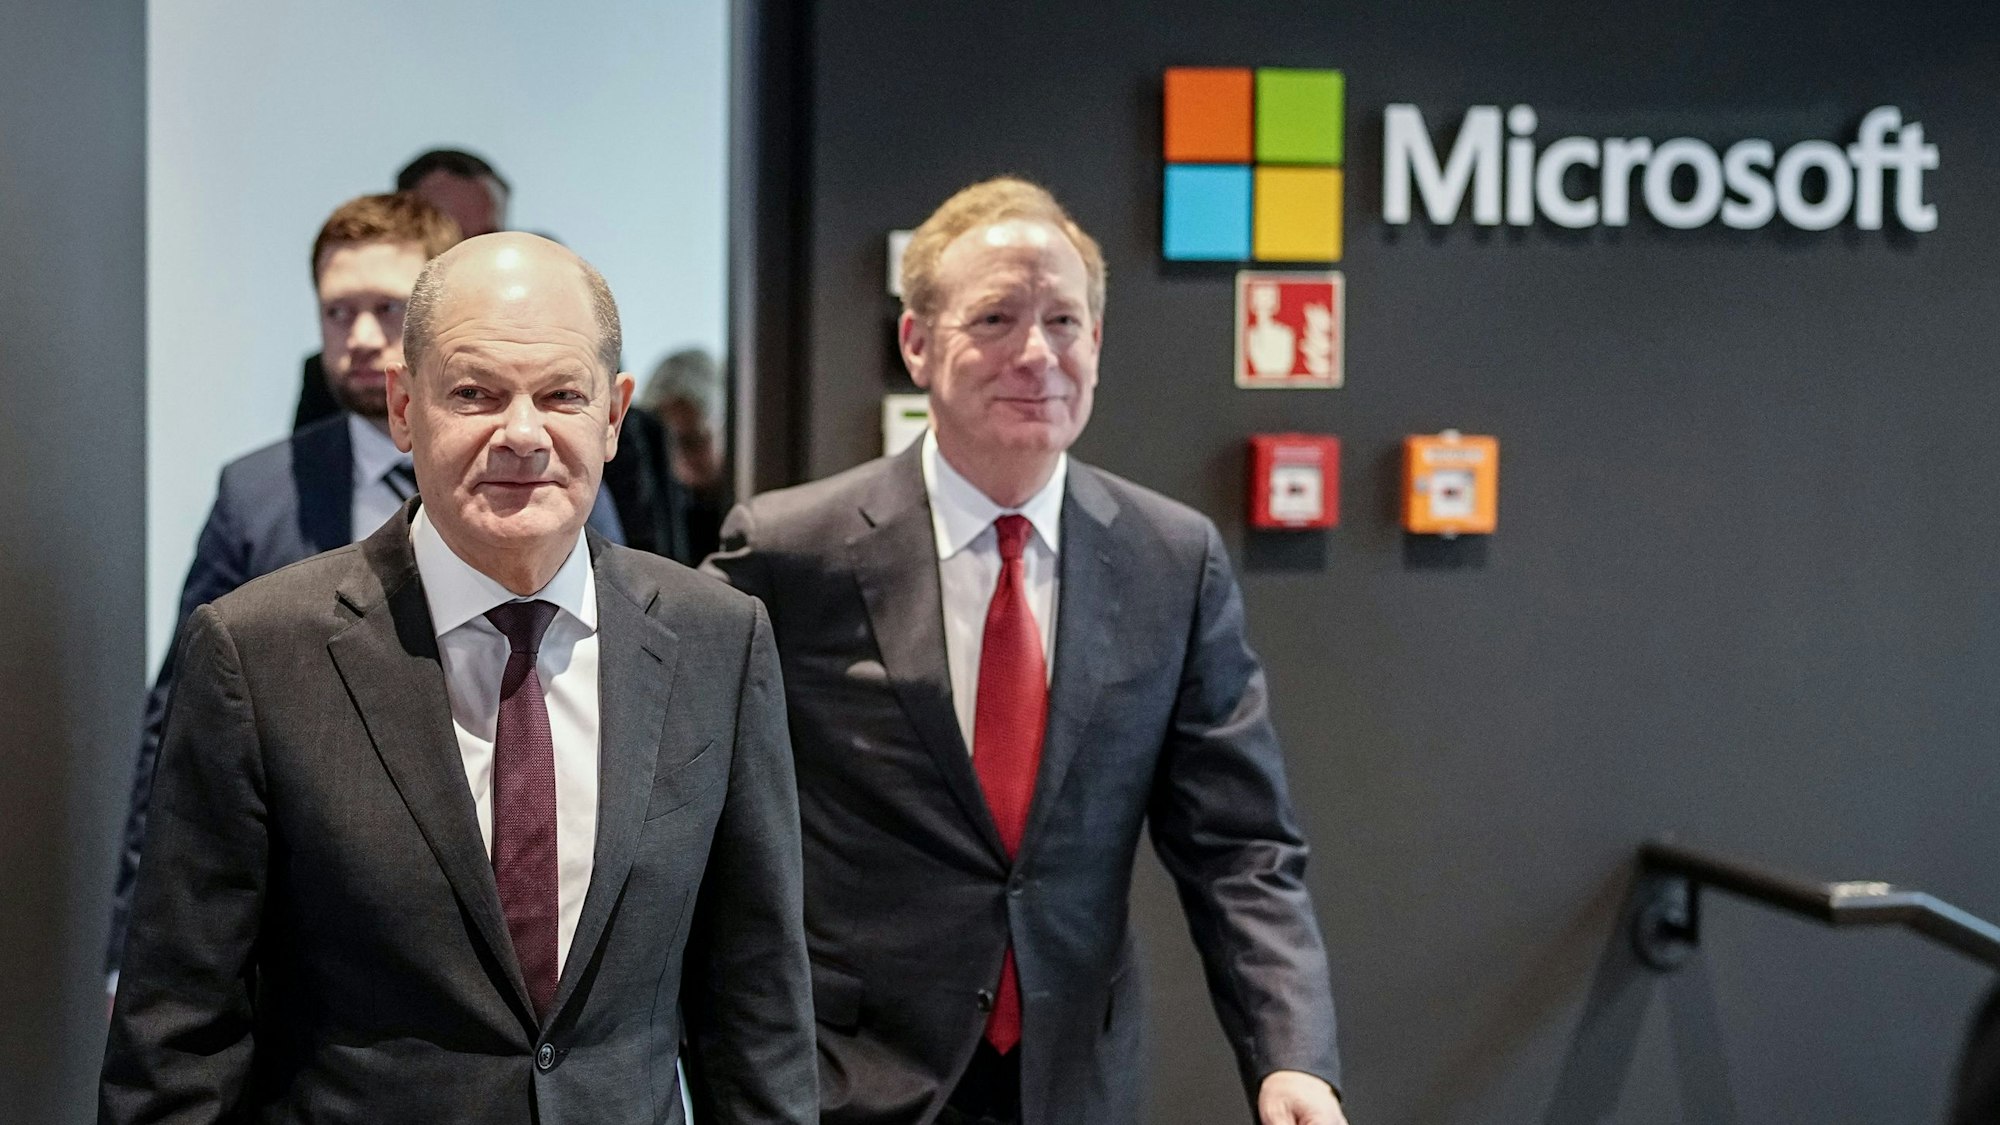 Bundeskanzler Olaf Scholz (SPD) und Microsoft-Präsident Brad Smith (rechts) am Donnerstag in Berlin.